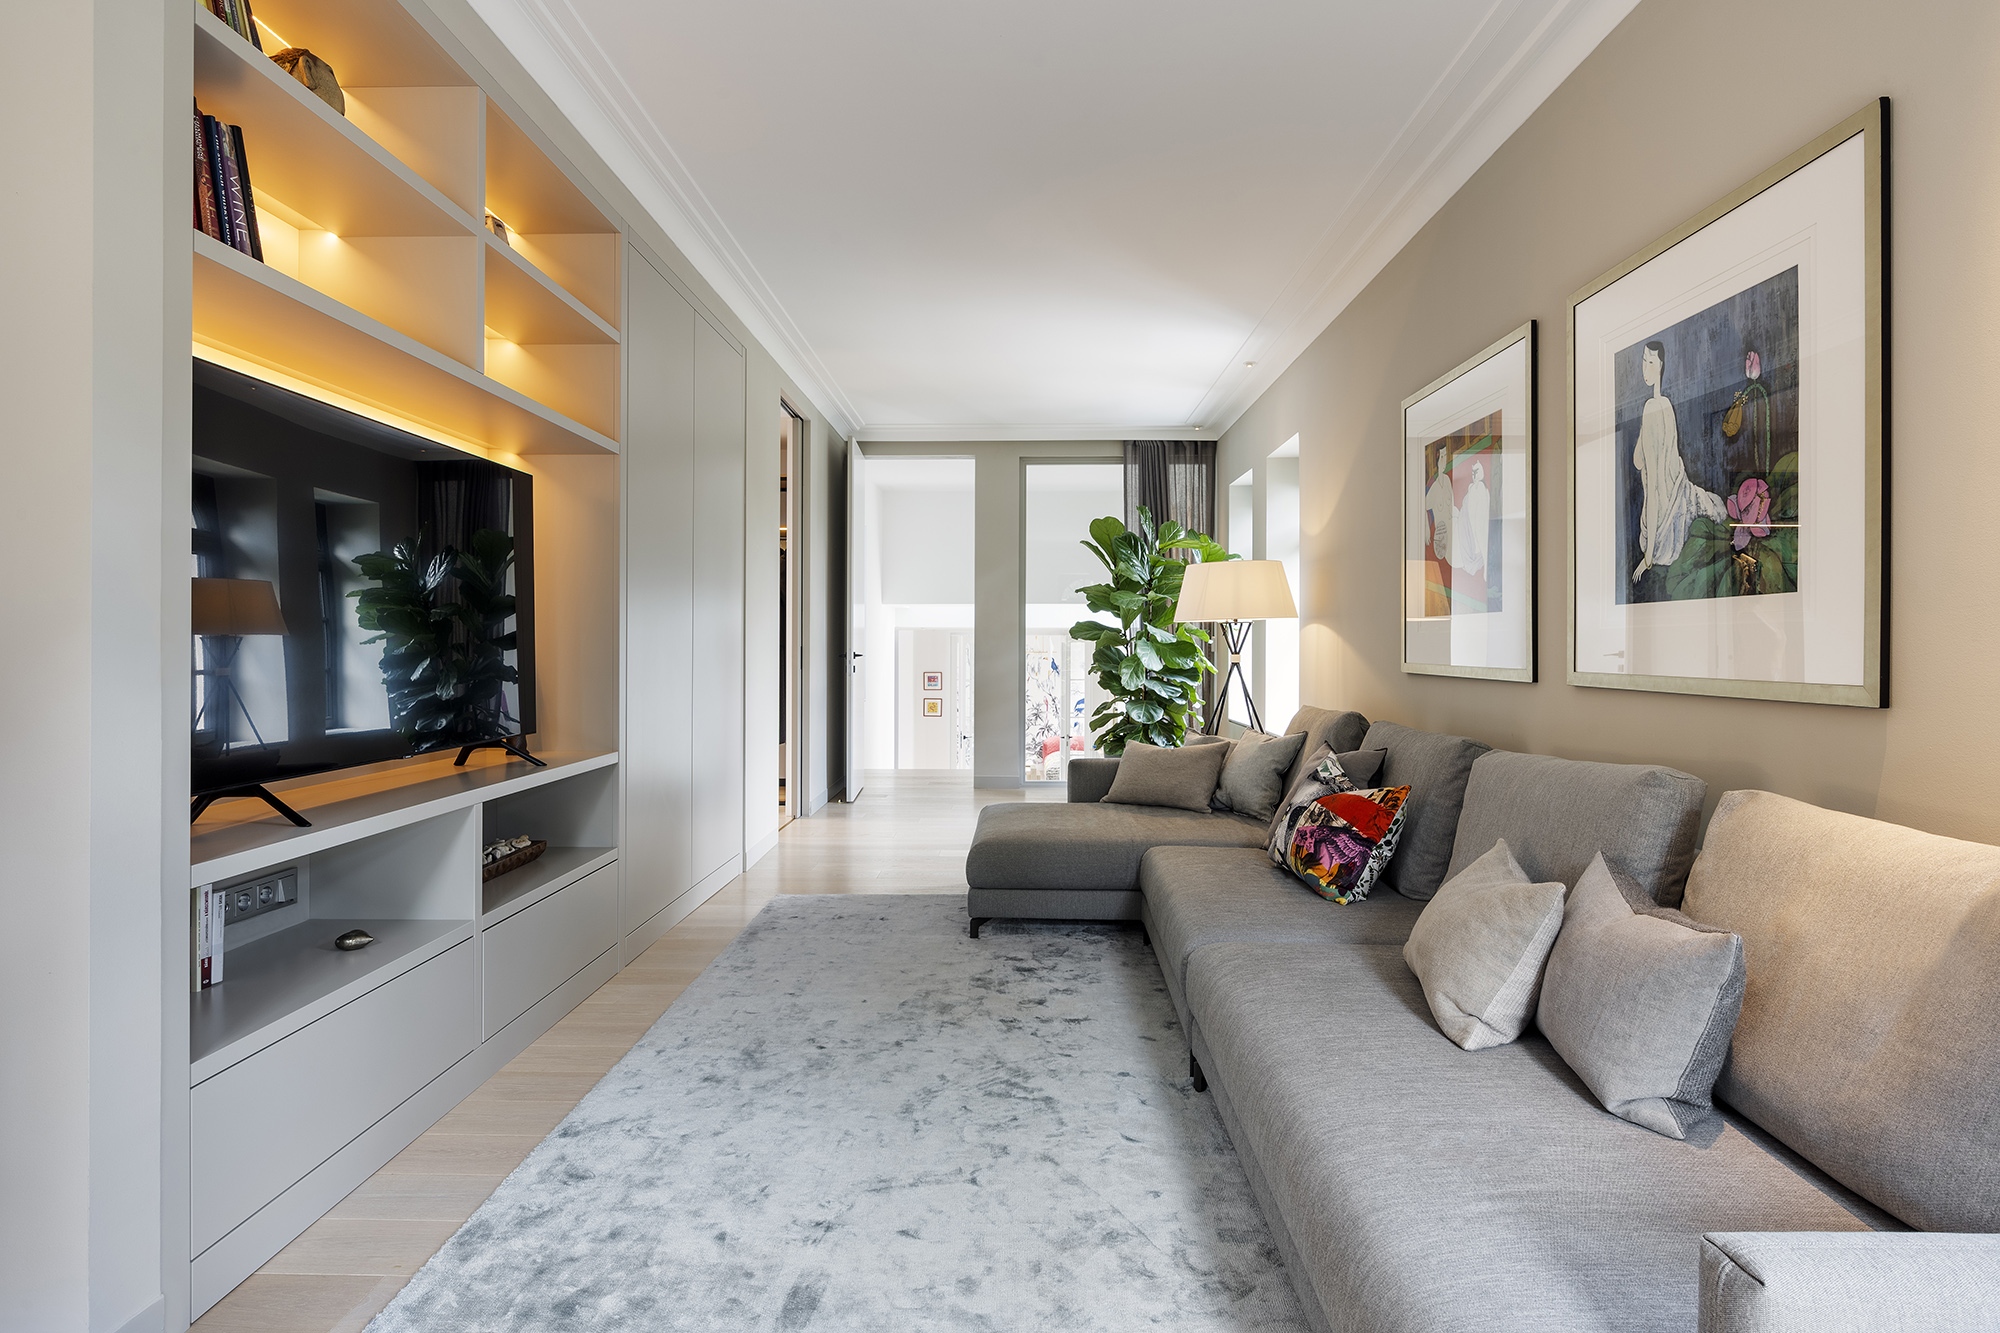 A szülők hálószobájához kapcsolódó nappali, bár szerényebb belmagasságú és méretű, ugyanazt a kifinomult, modern eleganciát hozza, mint a lakás többi helyisége.